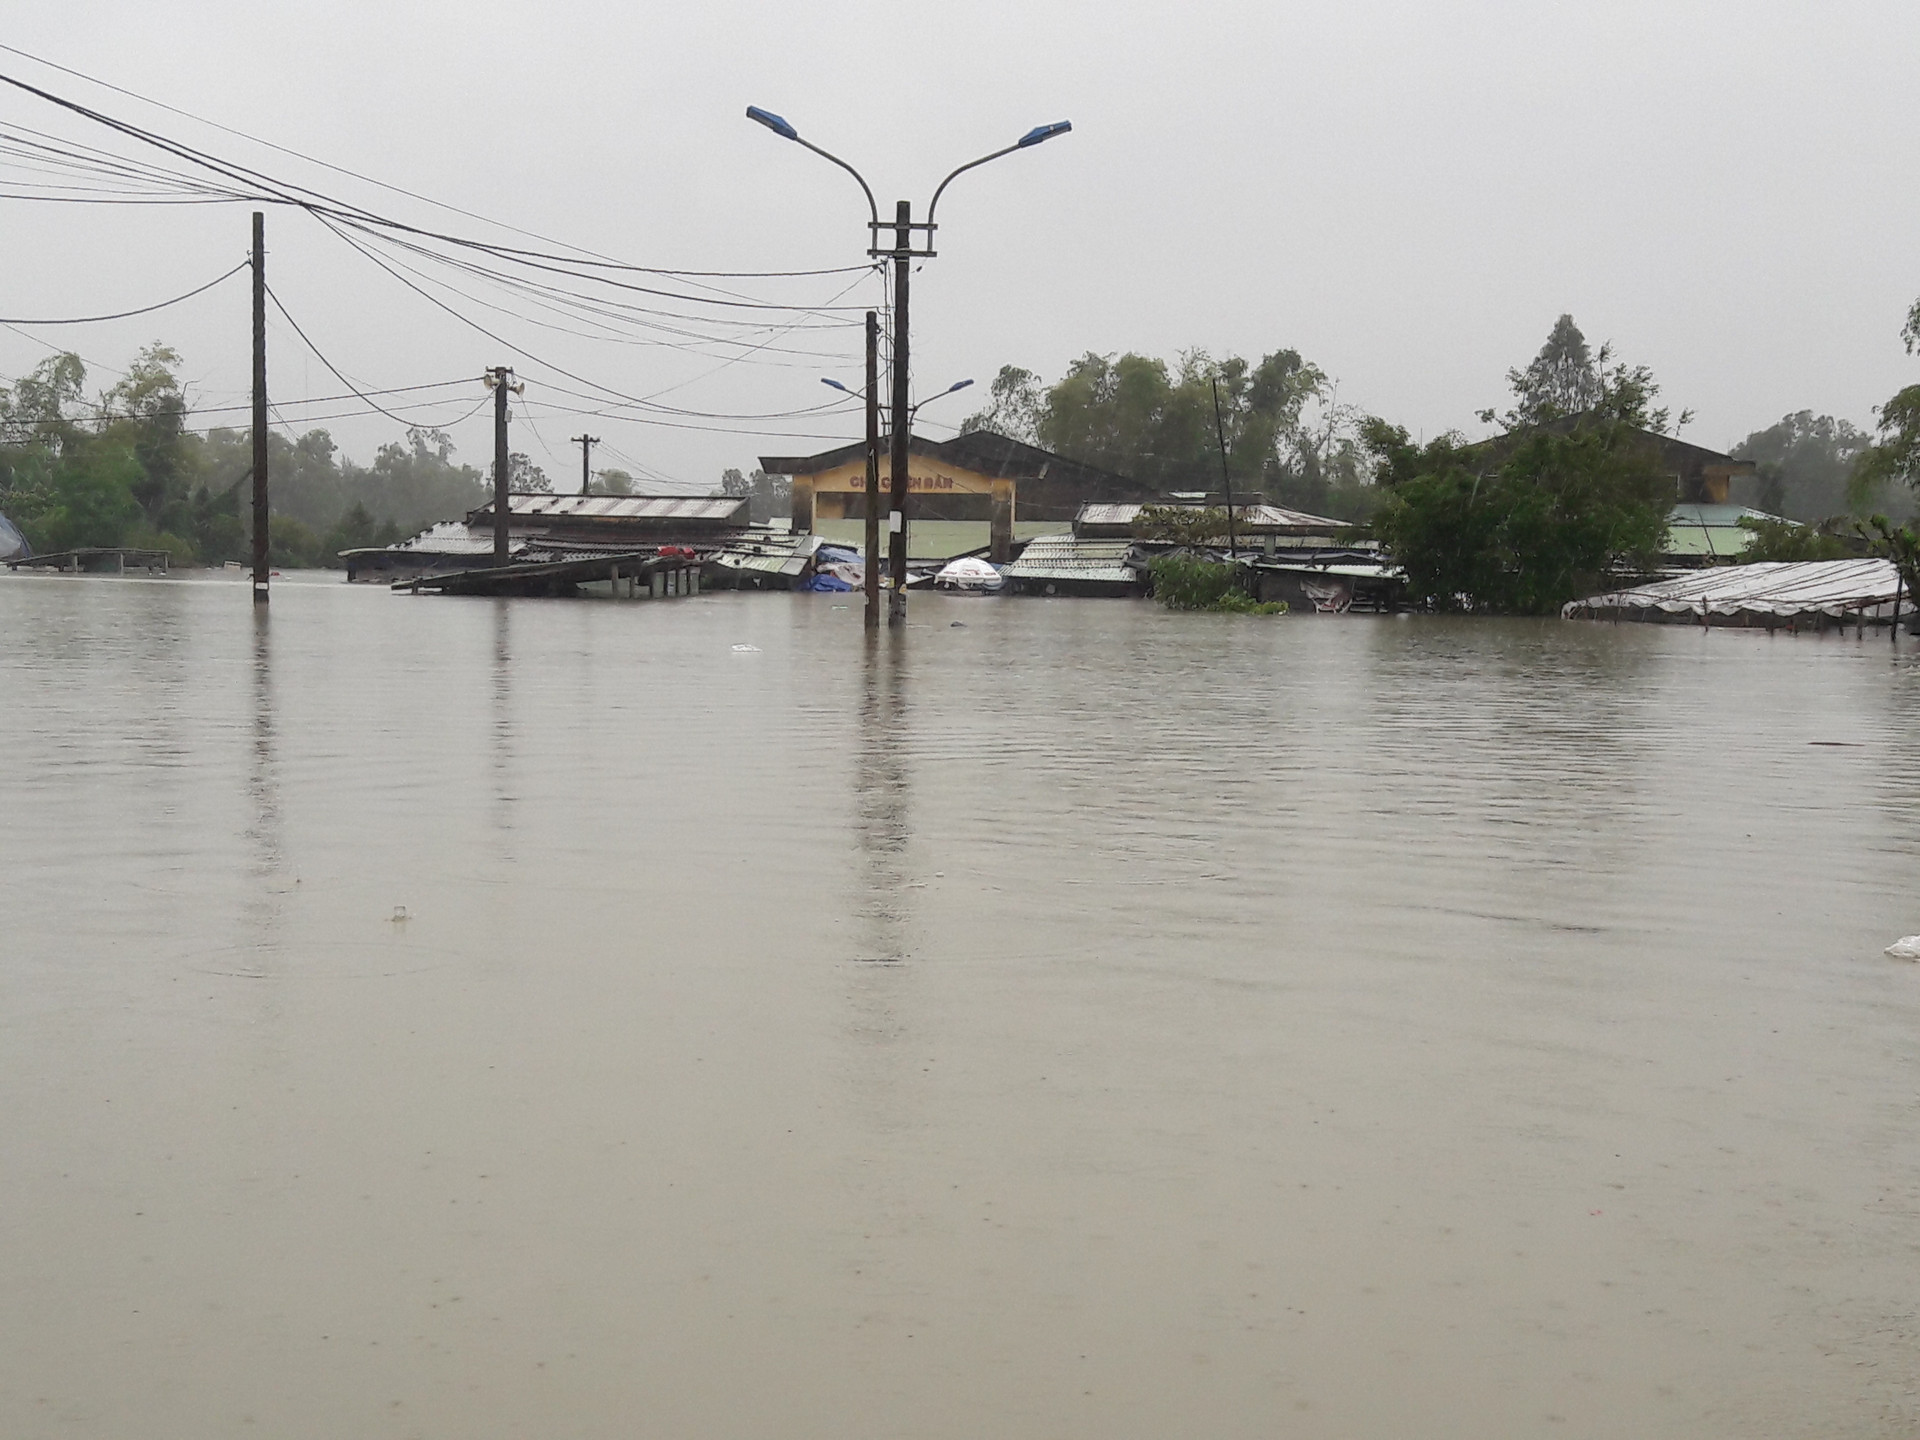 Hơn 300 hộ dân ở xã Tam Đàn chìm sâu trong biển nước. Có nơi nước dâng cao tầm 3-4 mét khiến cho hàng loạt ngôi nhà chìm sâu trong lũ.